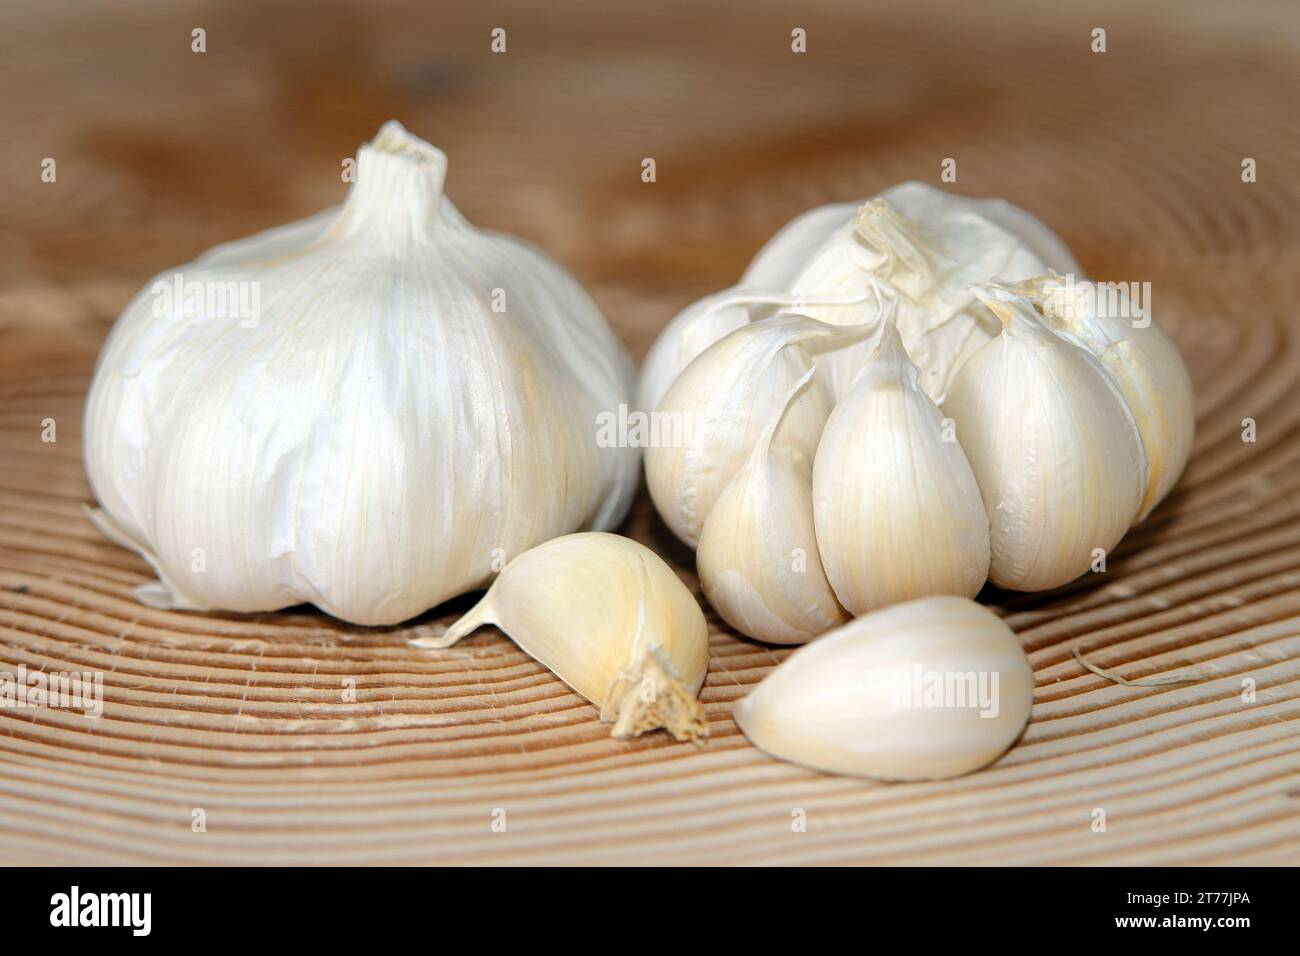 common garlic (Allium sativum), garlic in a basket Stock Photo